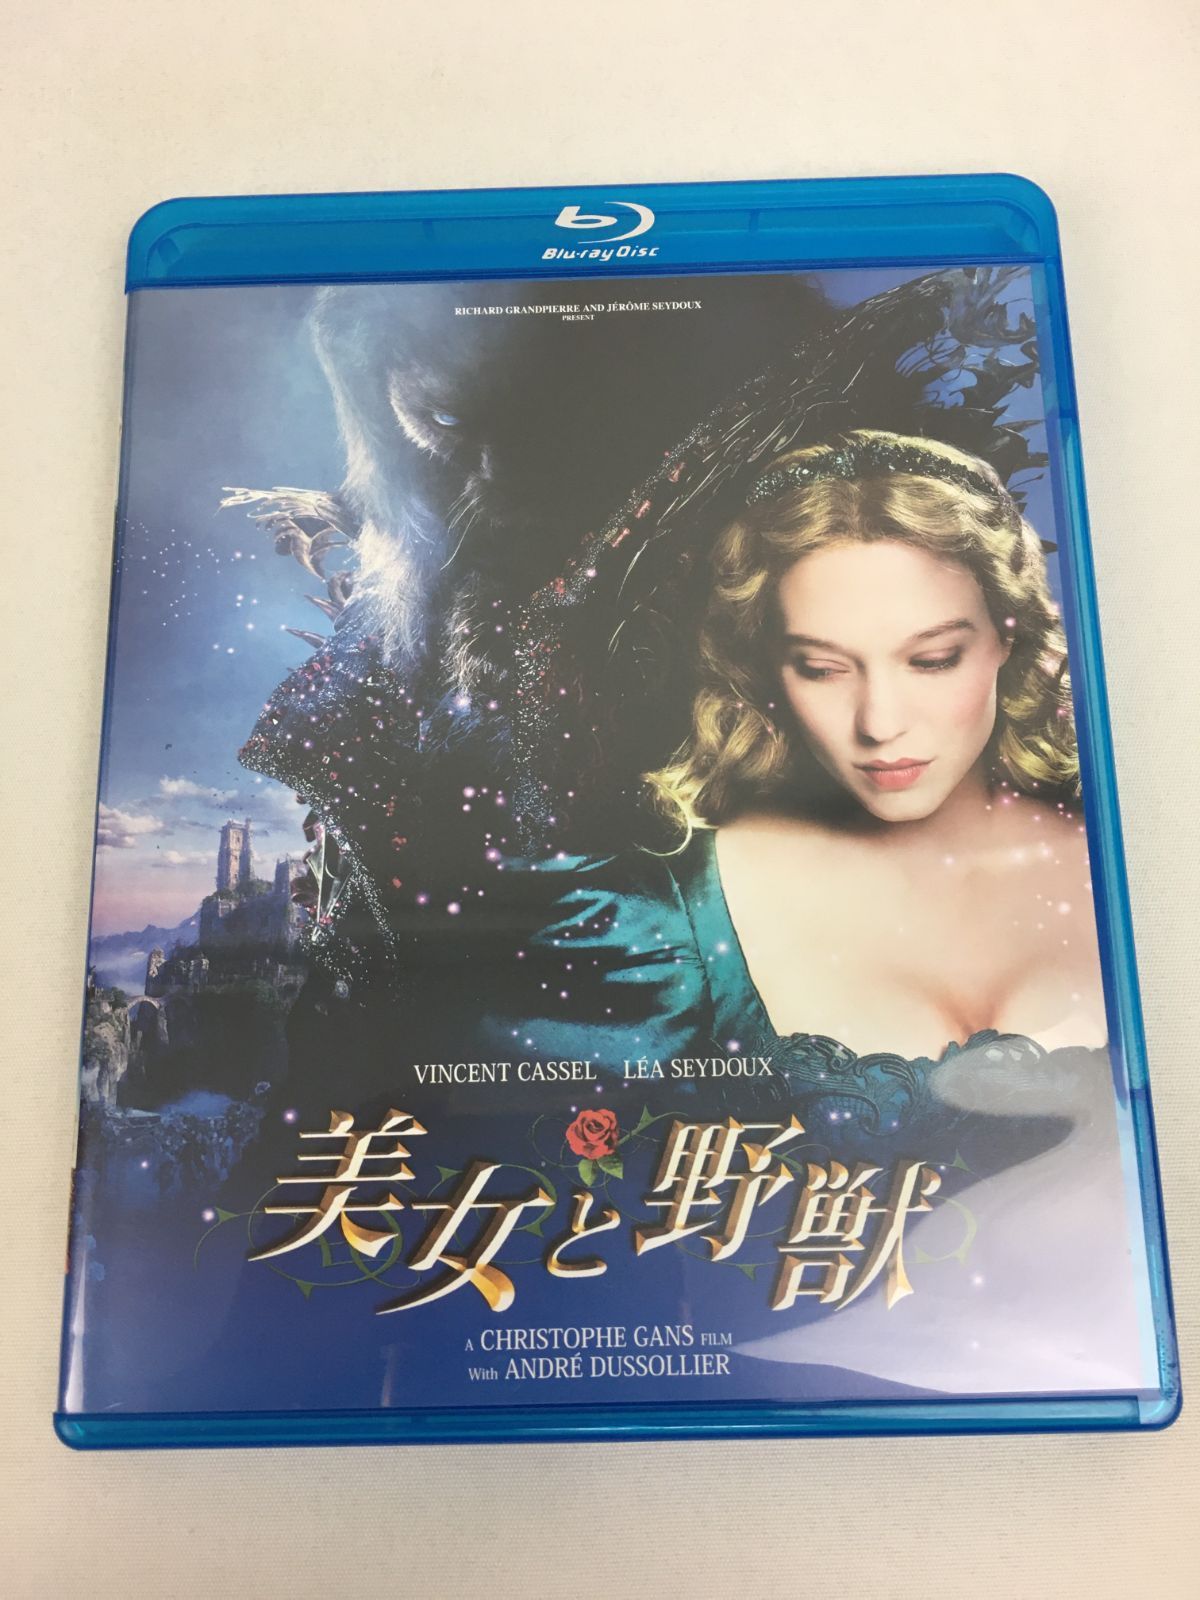 美女と野獣  スペシャルプライス Blu-ray 2zzhgl6